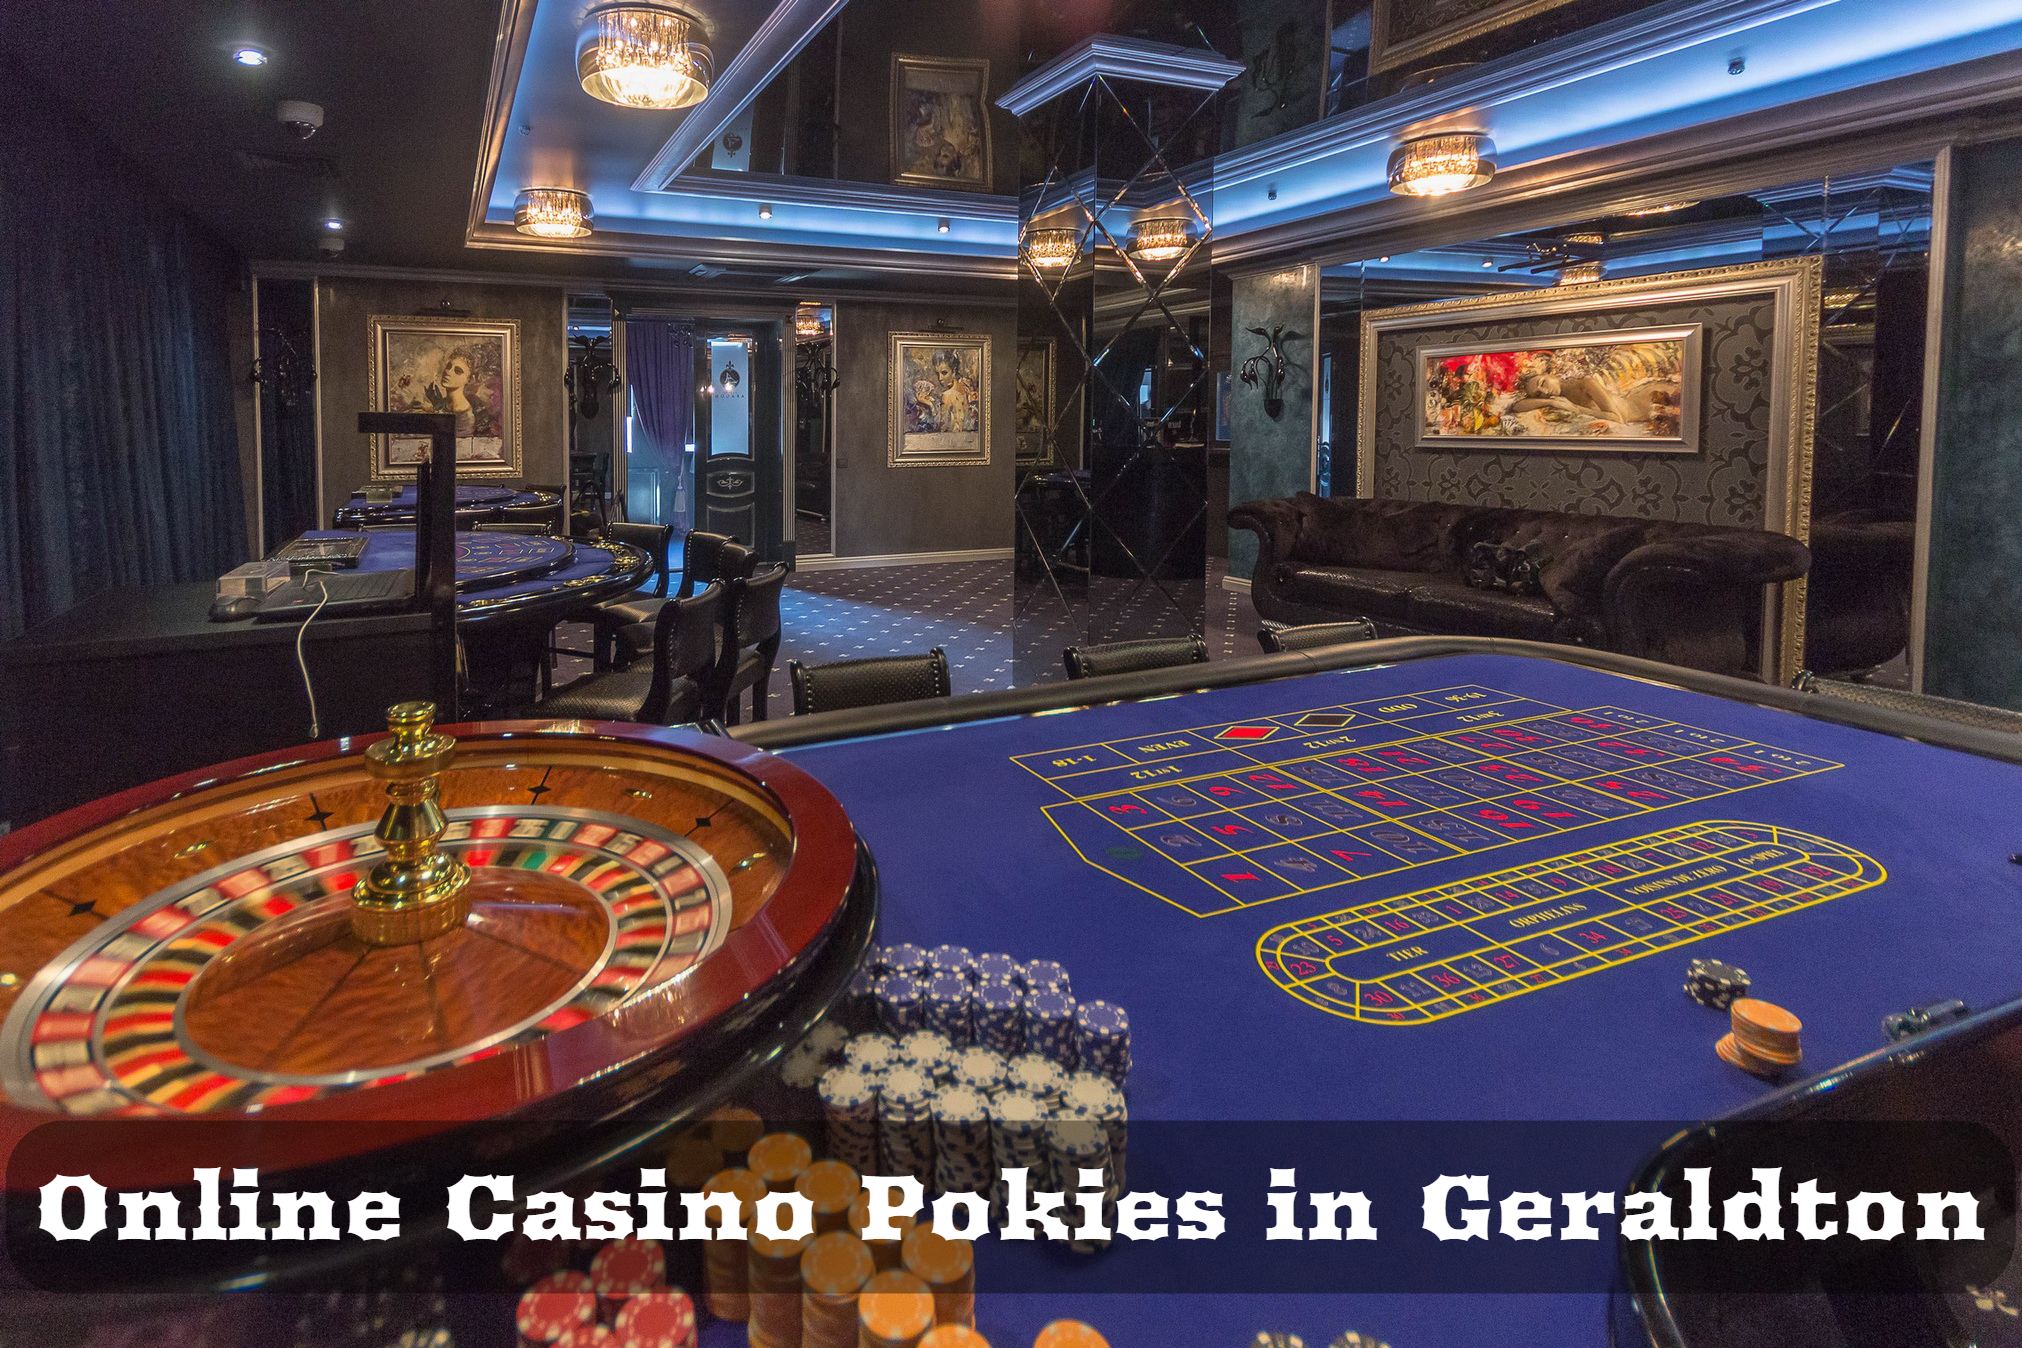 Online Casino Pokies in Geraldton